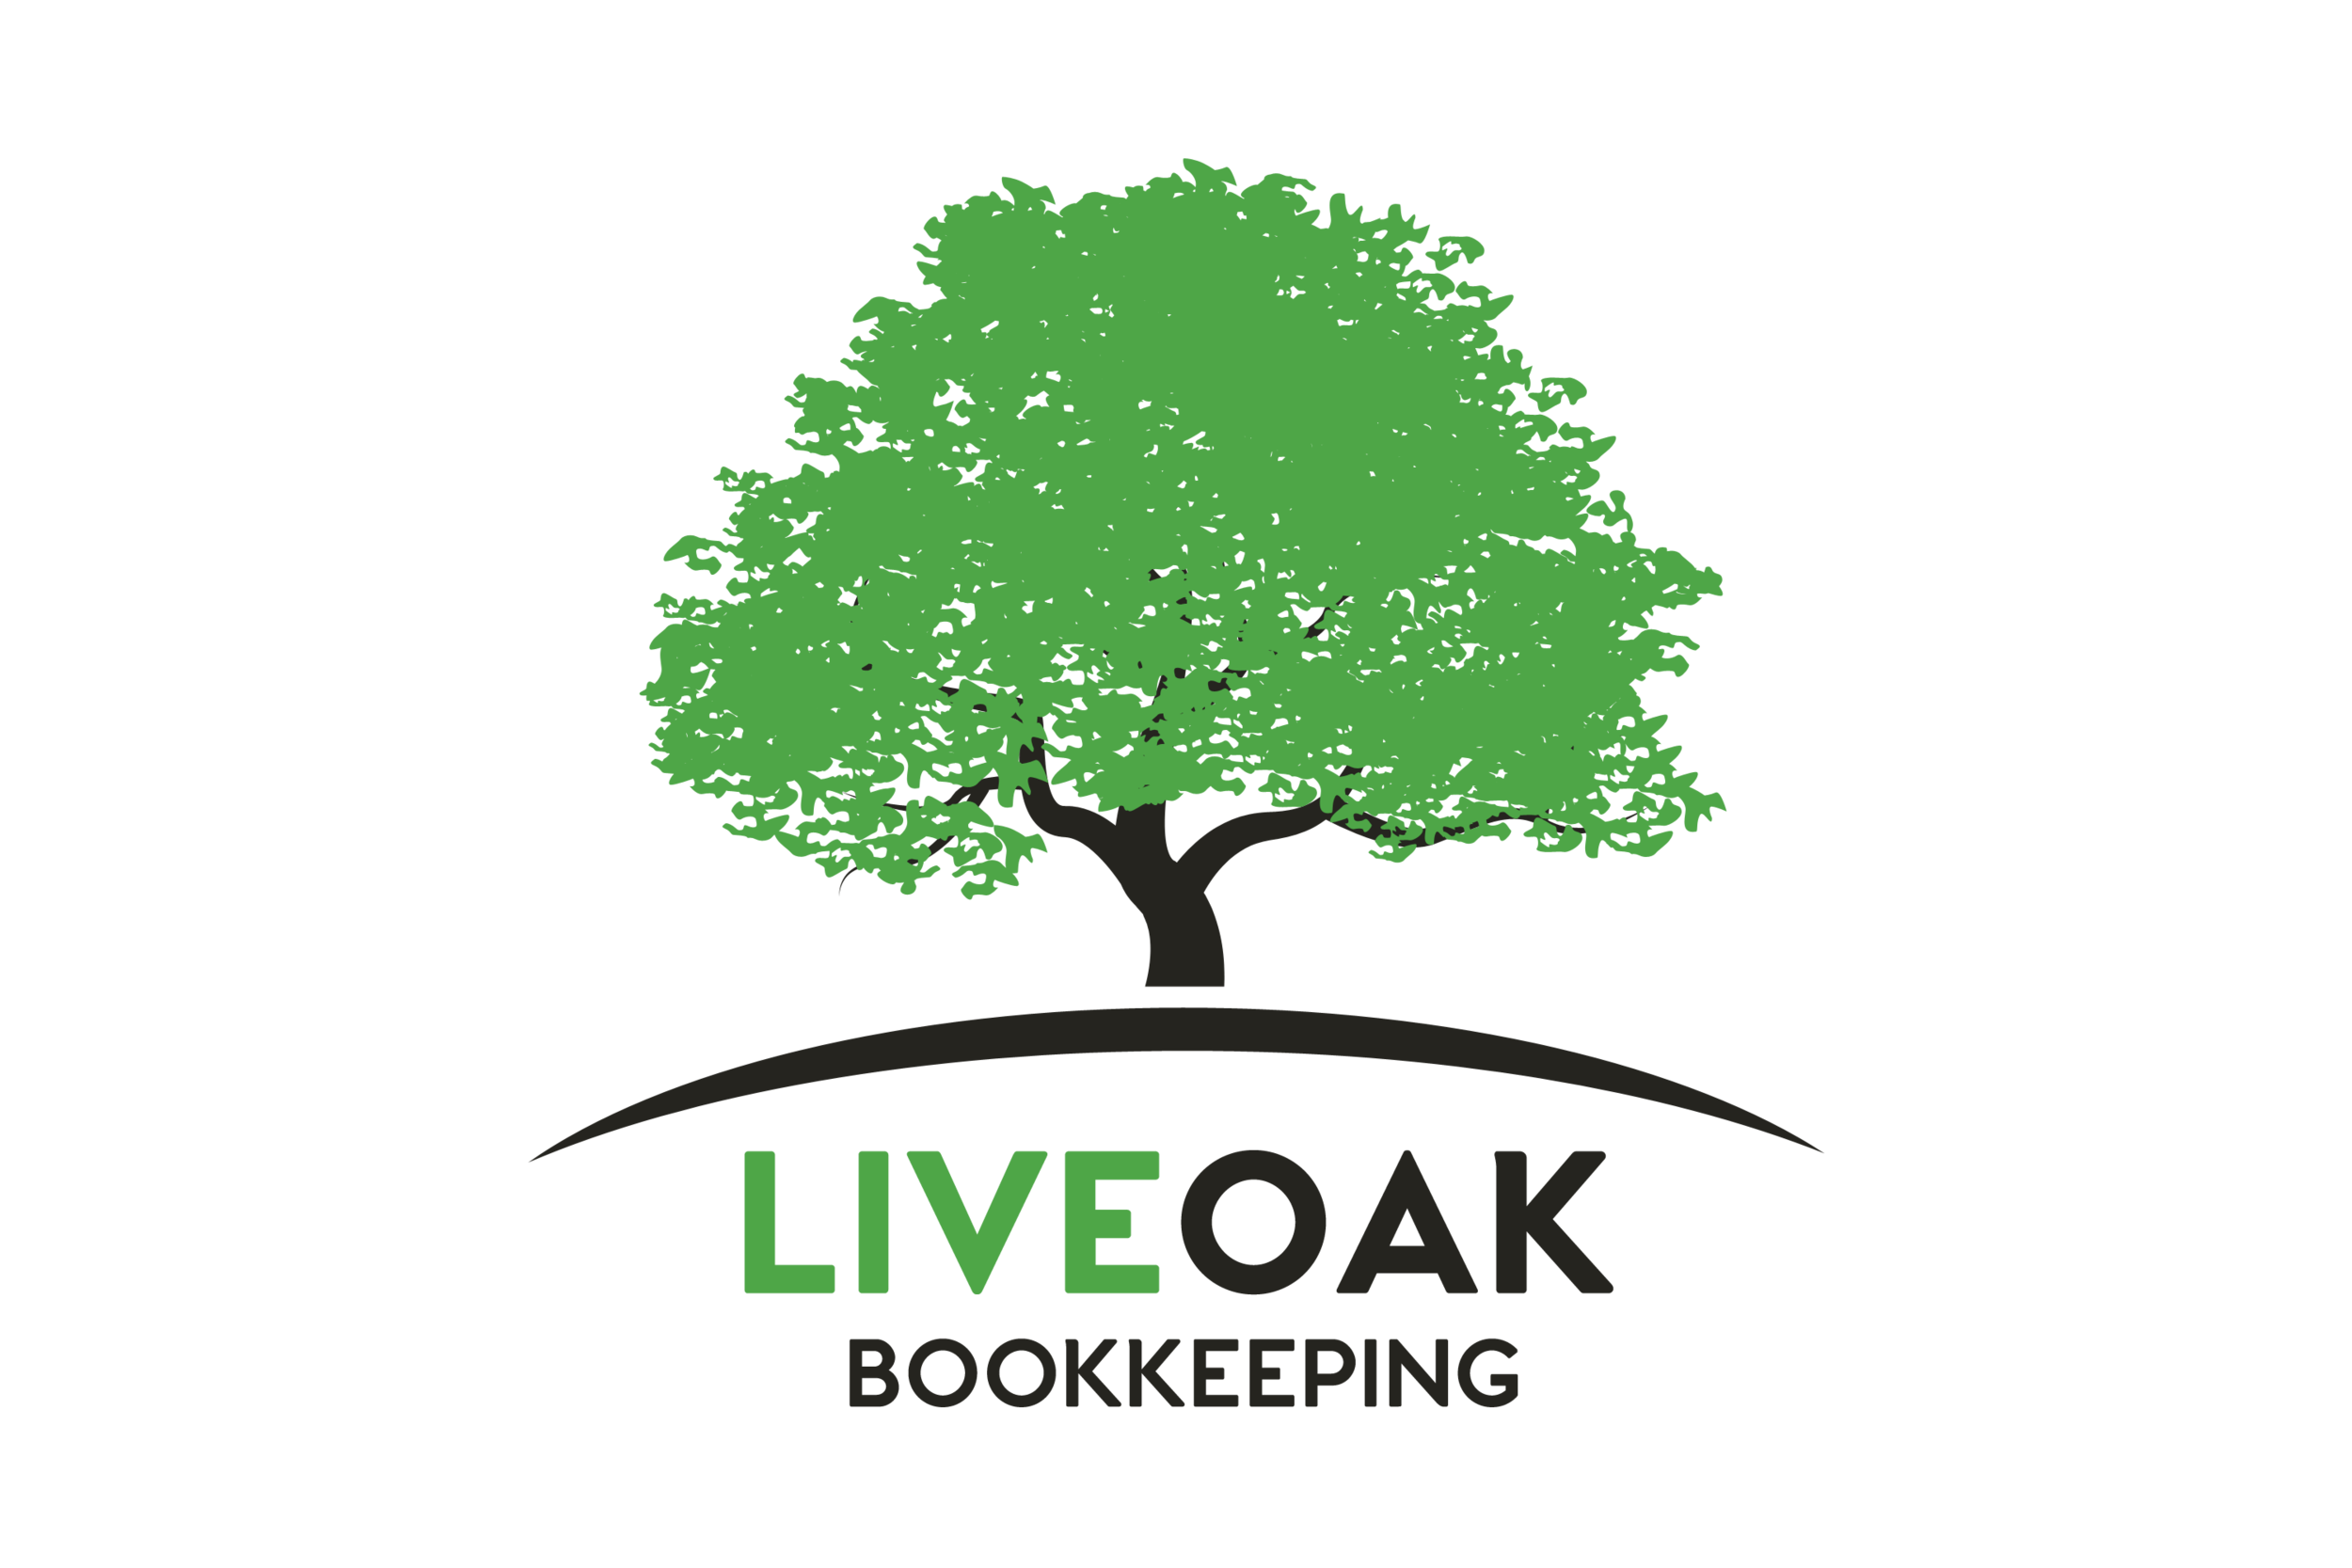 Live Oak Bookkeeping